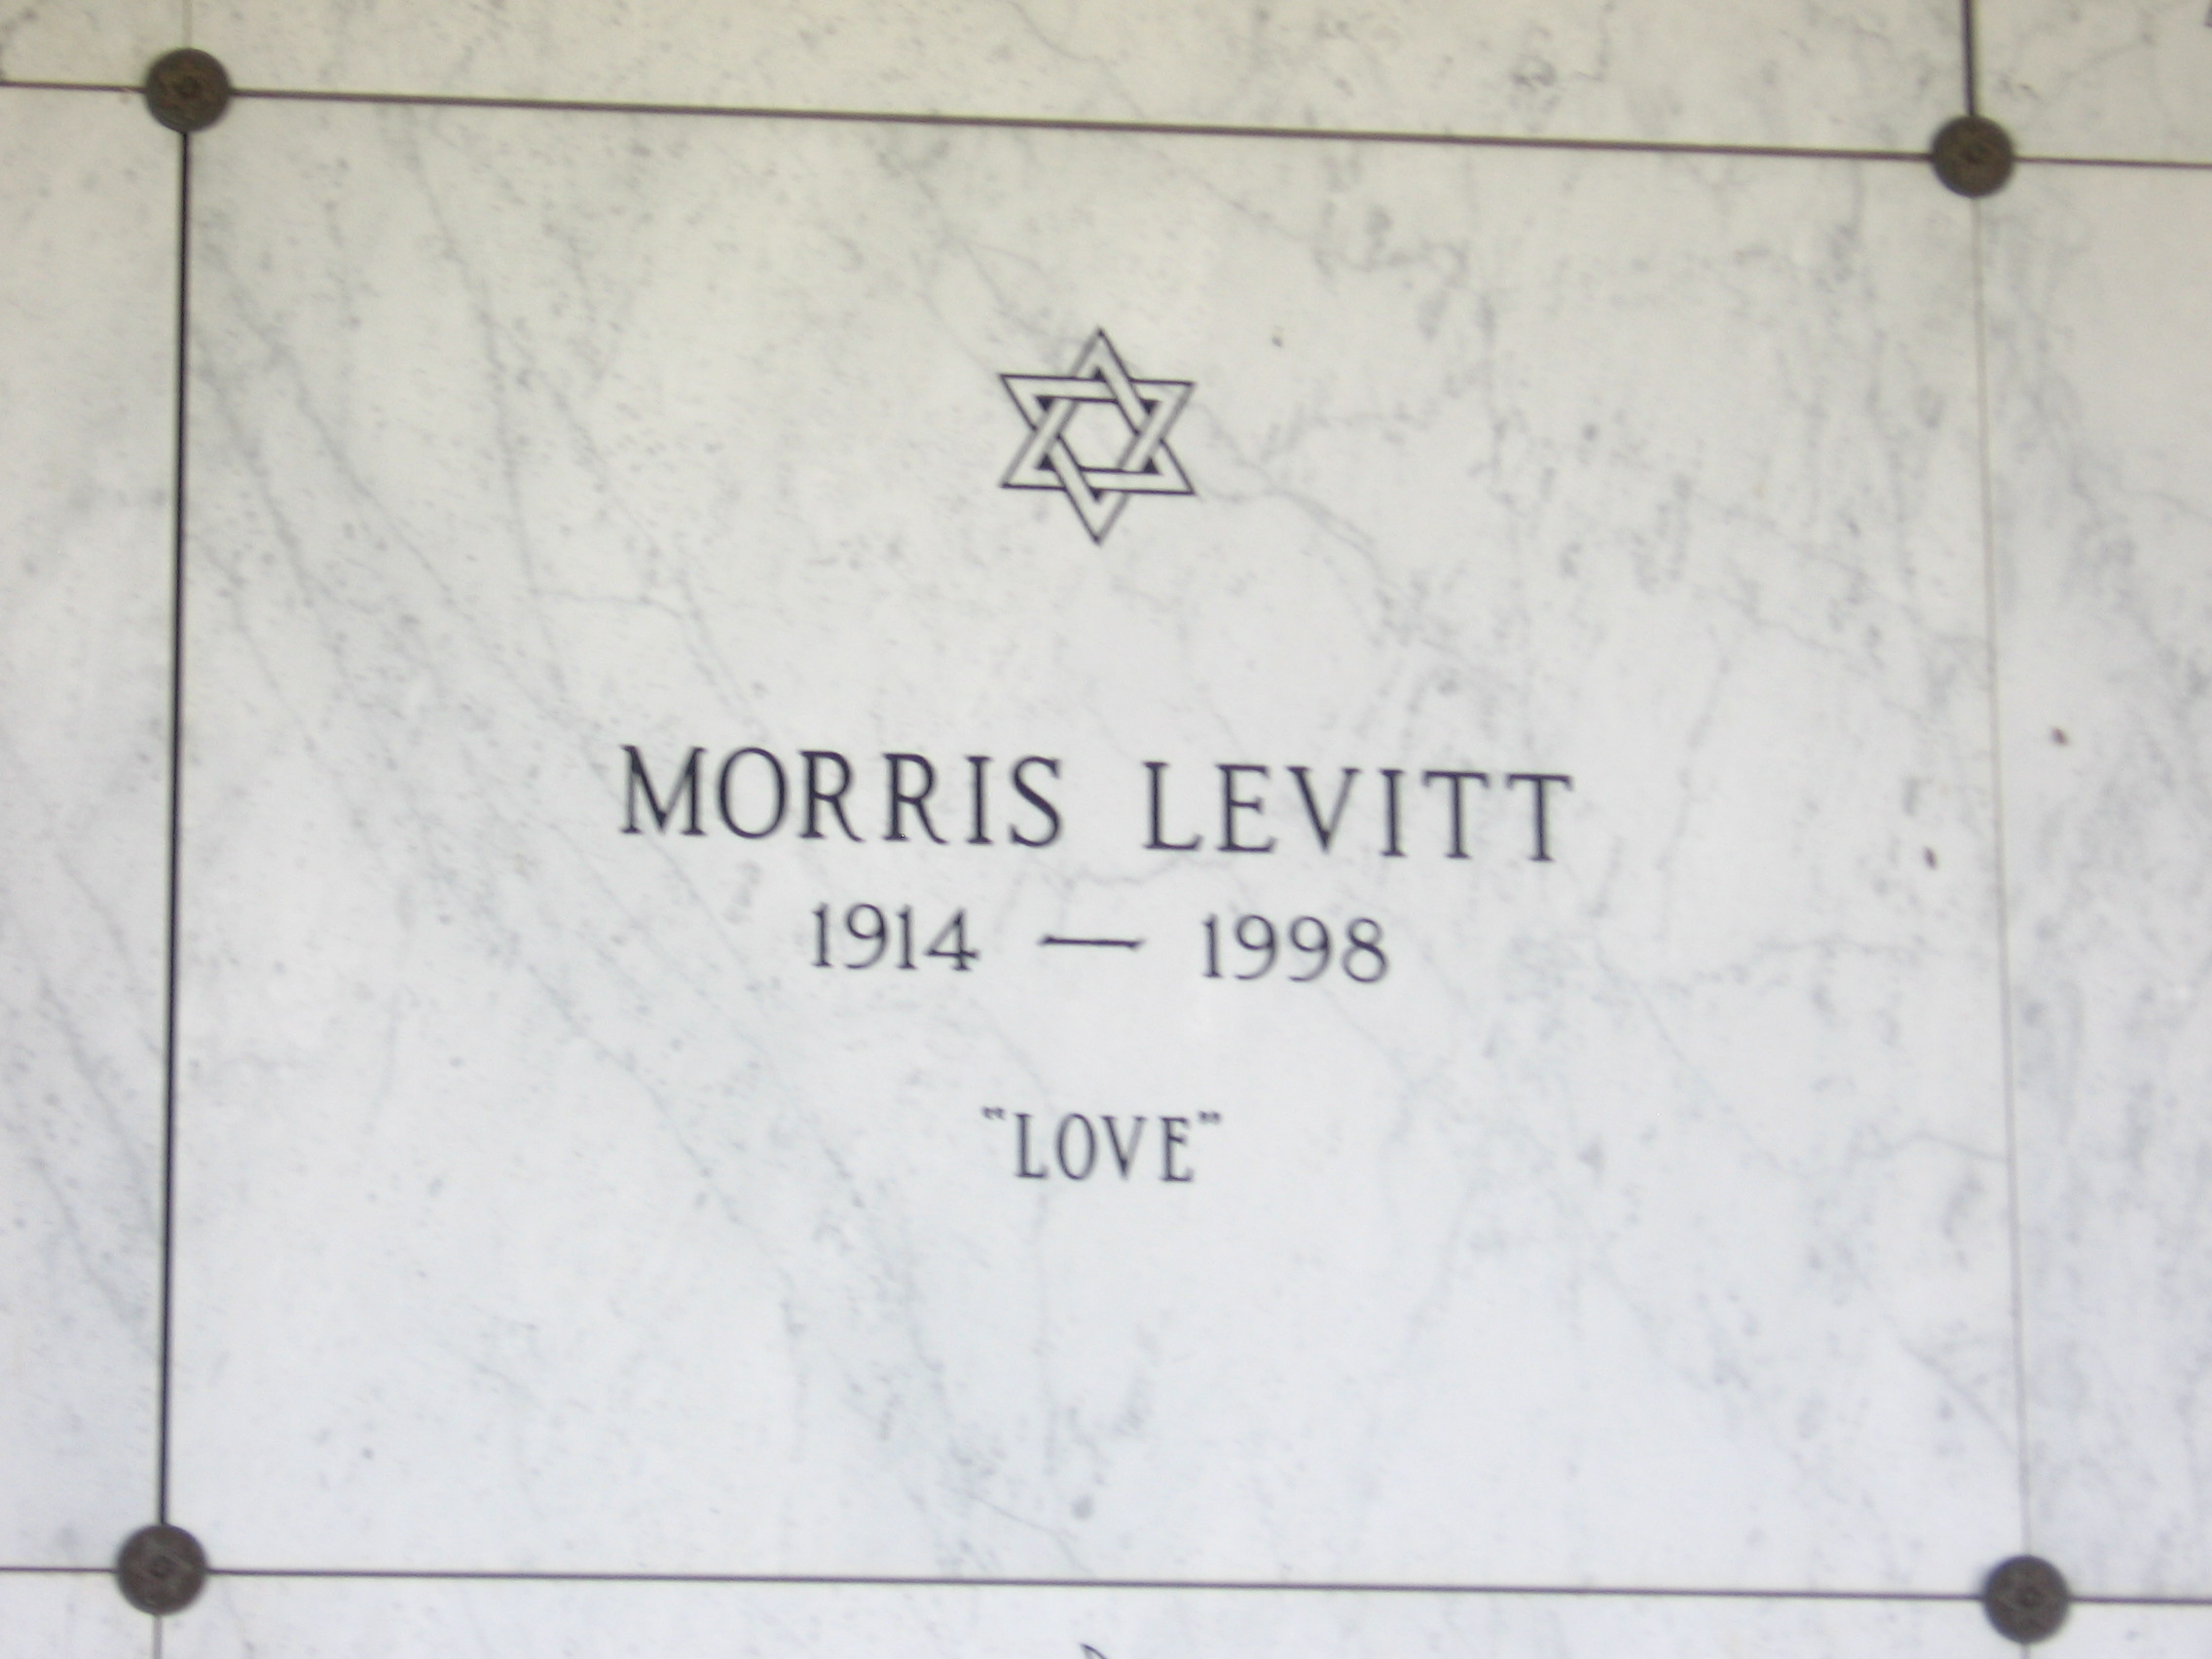 Morris Levitt